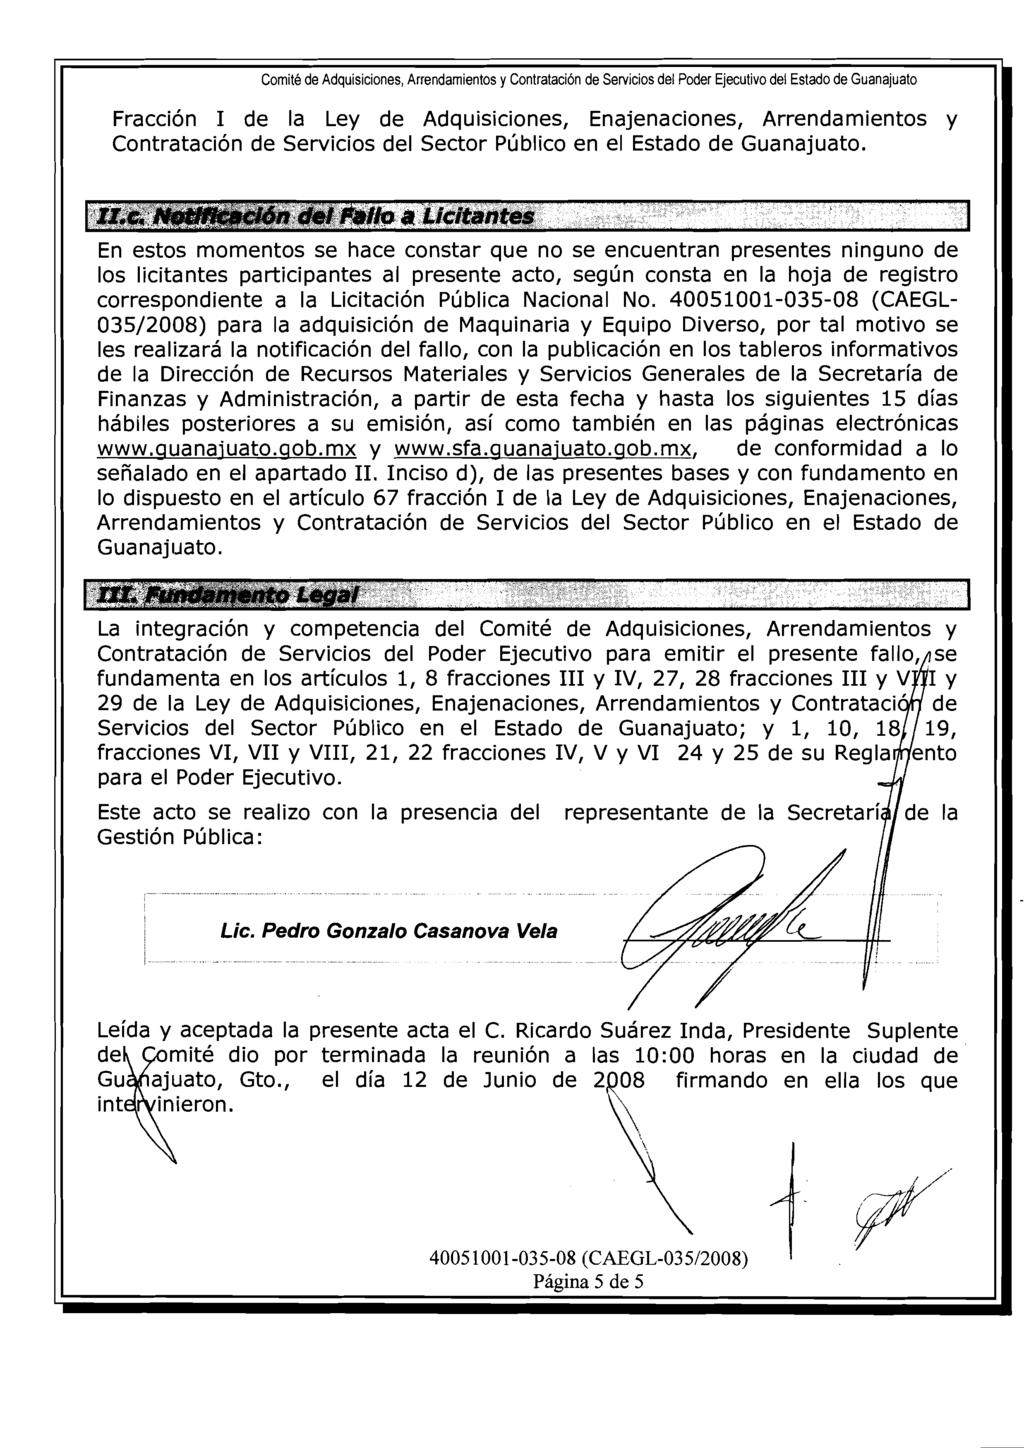 Fraccion de la Ley de Adquisiciones, Enajenaciones, Arrendamientos y Contratacion de Servicios del Sector Pljblico en el Estado de Guanajuato.